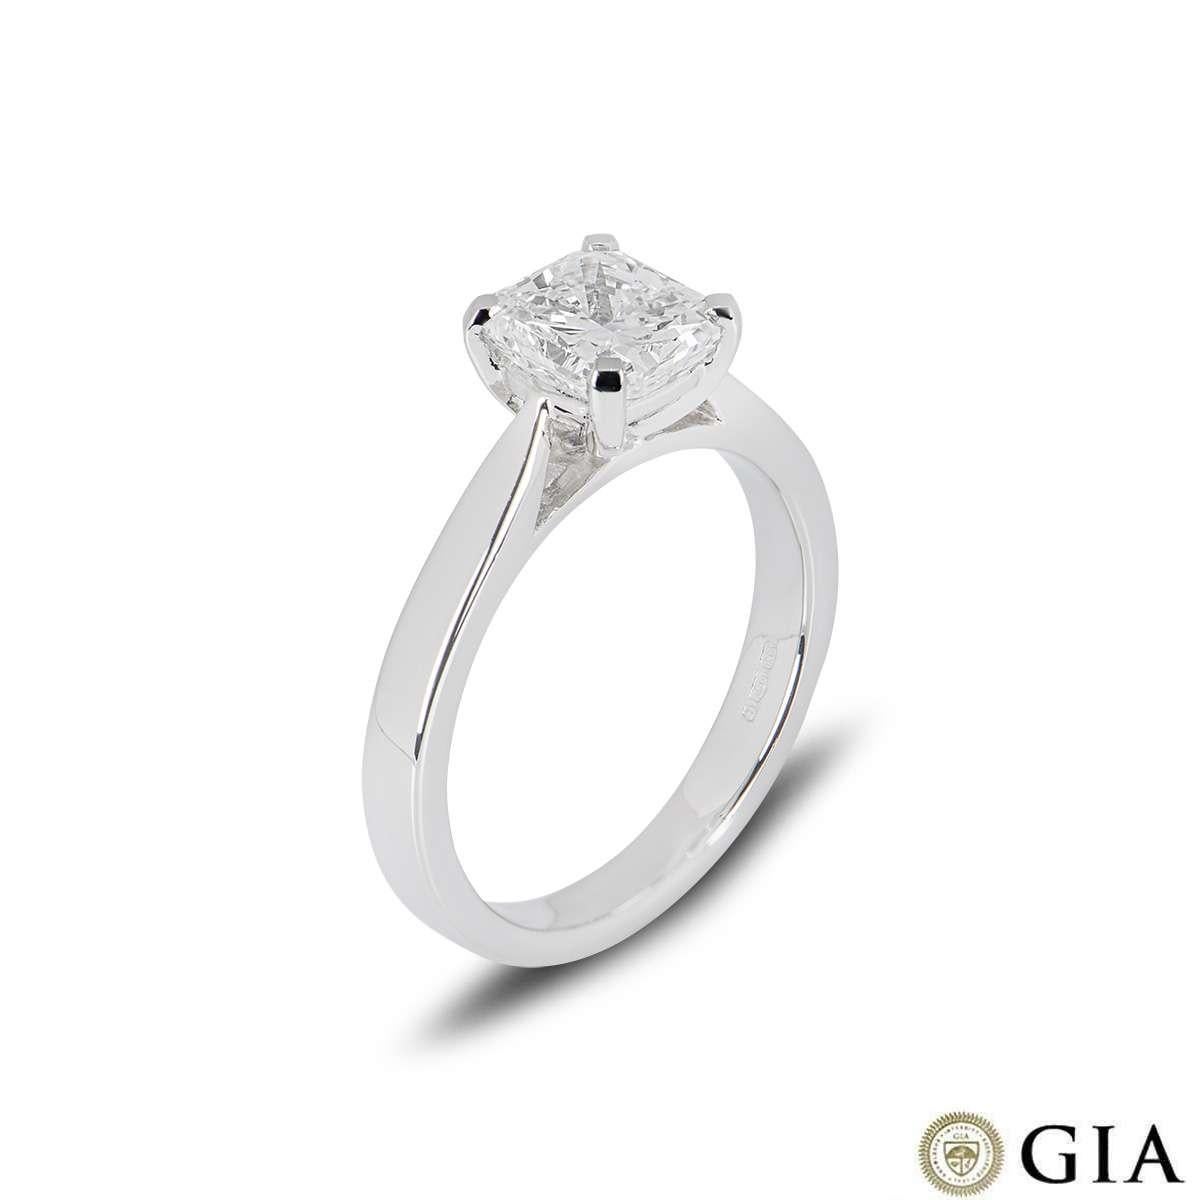 Ein wunderschöner Diamantring aus Platin. Der Ring ist mit einem Diamanten im Strahlenschliff mit einem Gewicht von 1,51 ct, Farbe G und Reinheit VS2 in einer klassischen Fassung mit vier Klauen besetzt. Der Ring hat derzeit die Größe UK M - EU 52 -